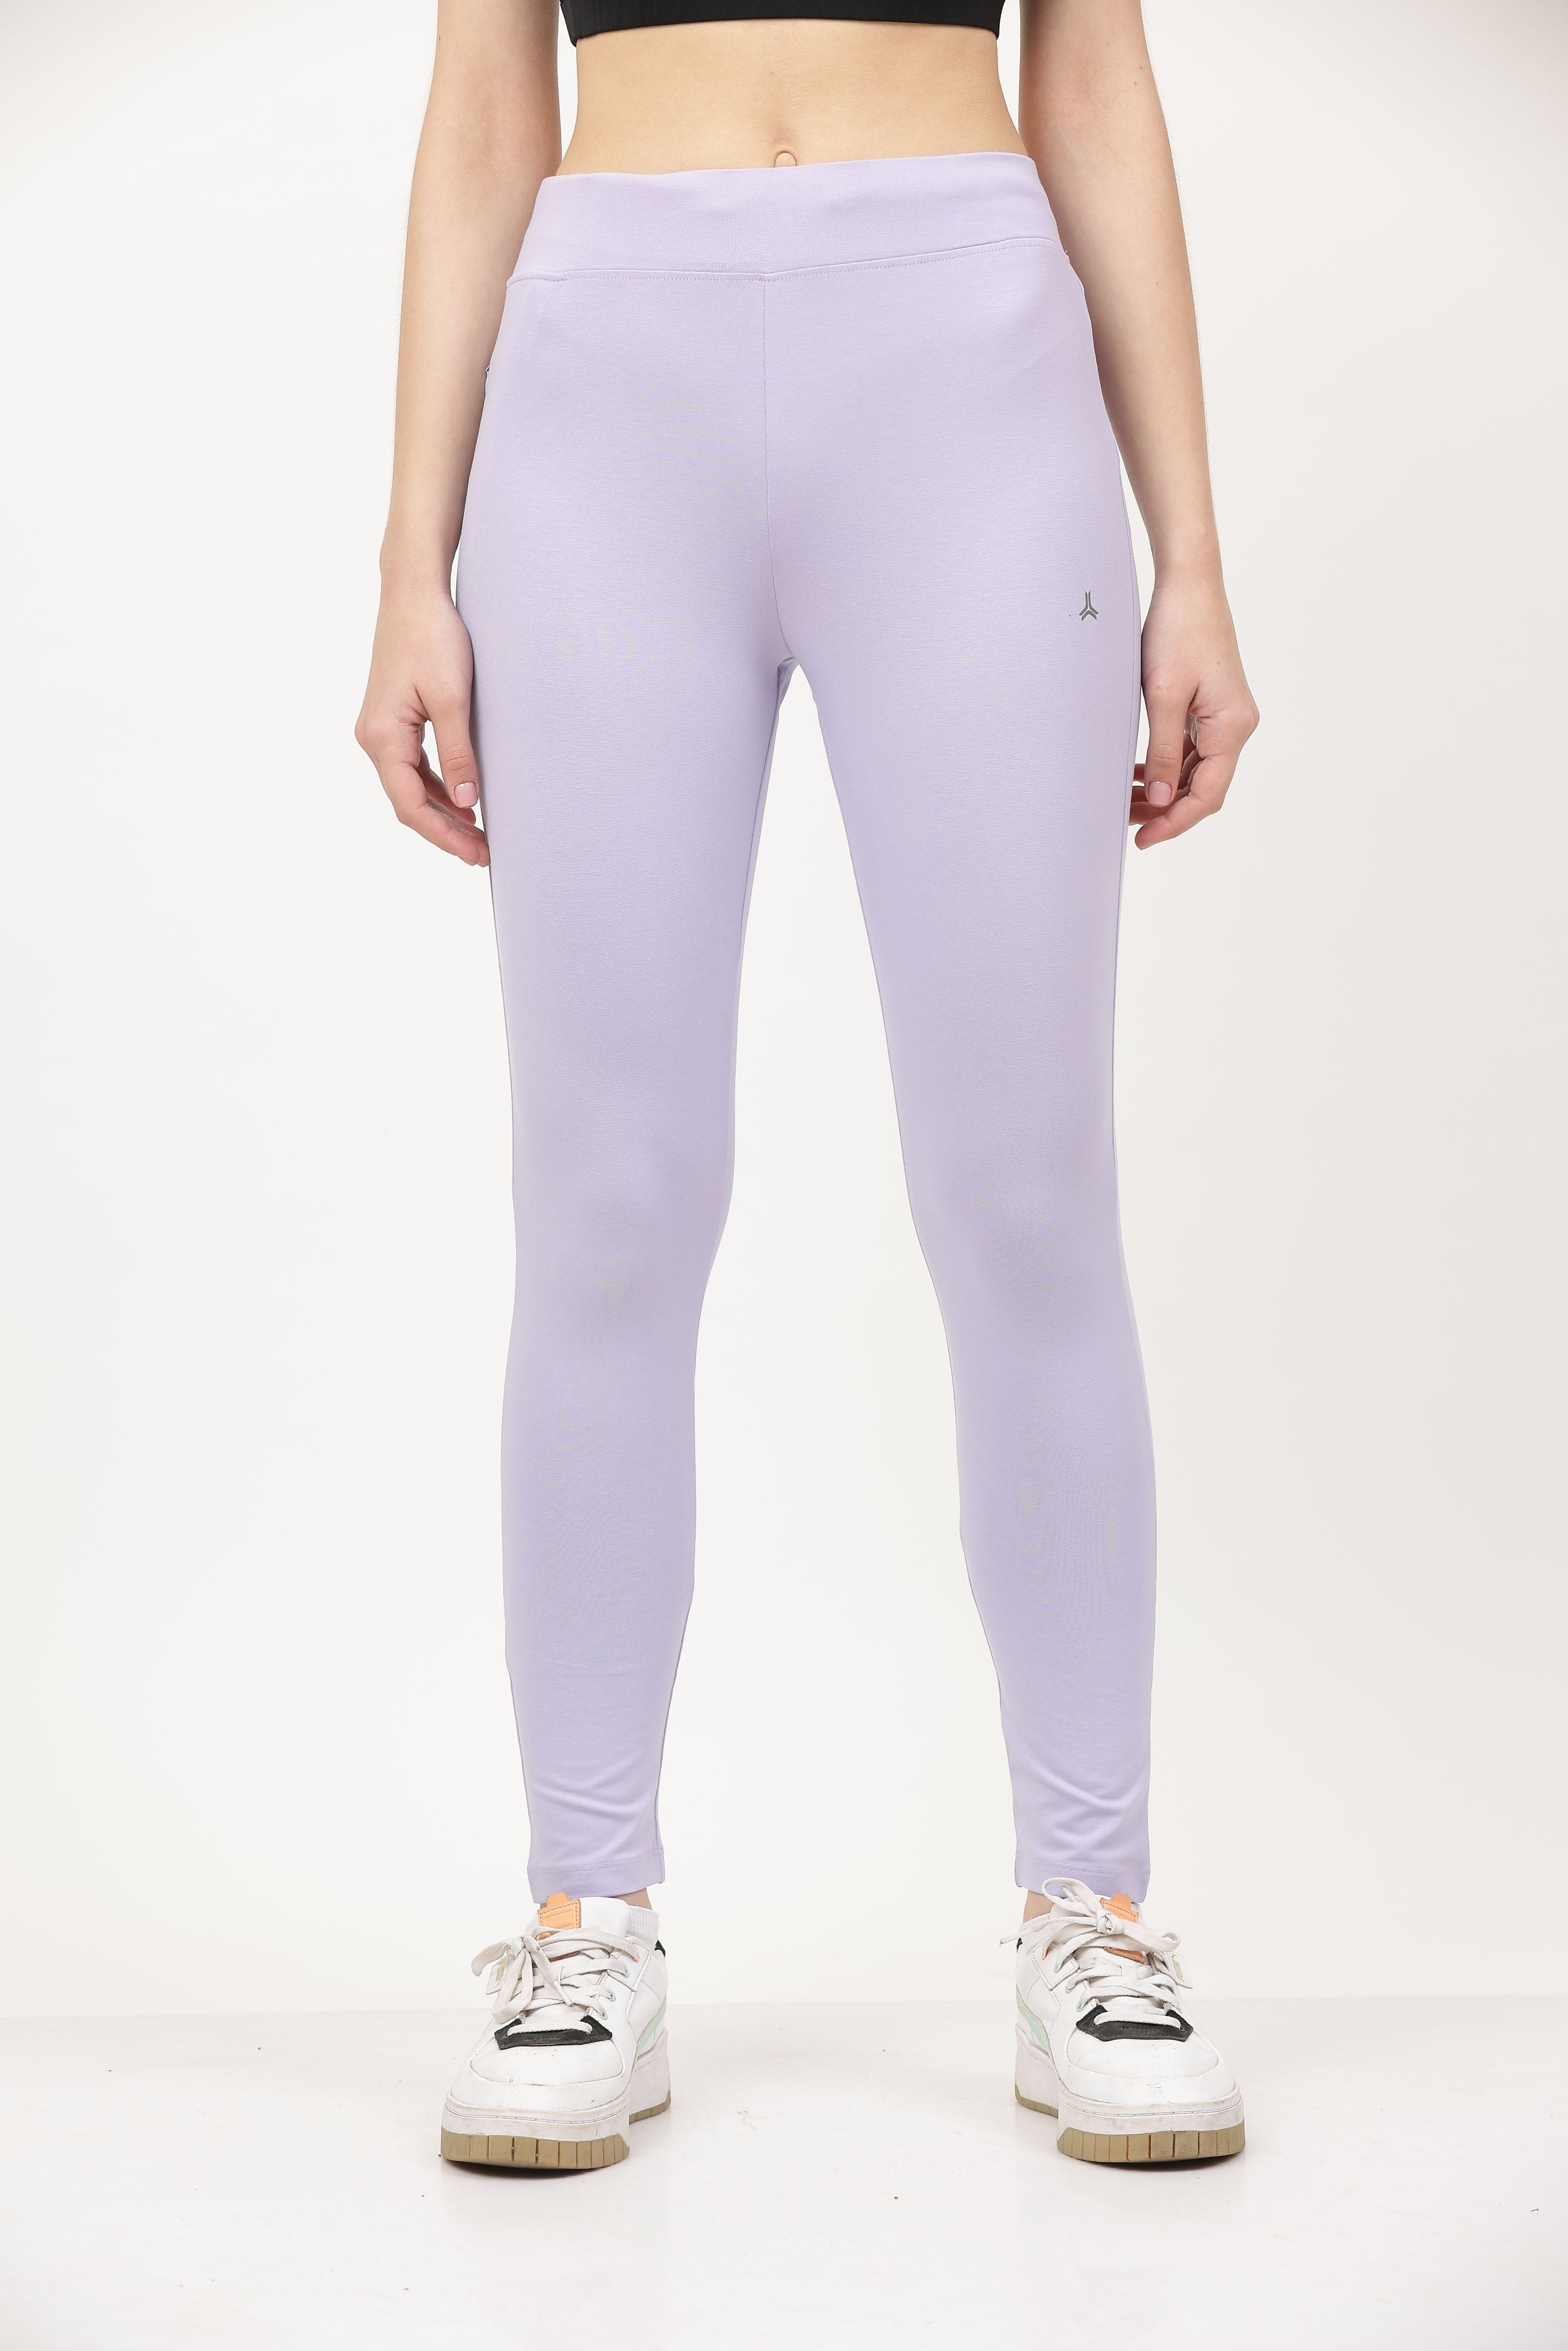 wholesale cotton yoga pants